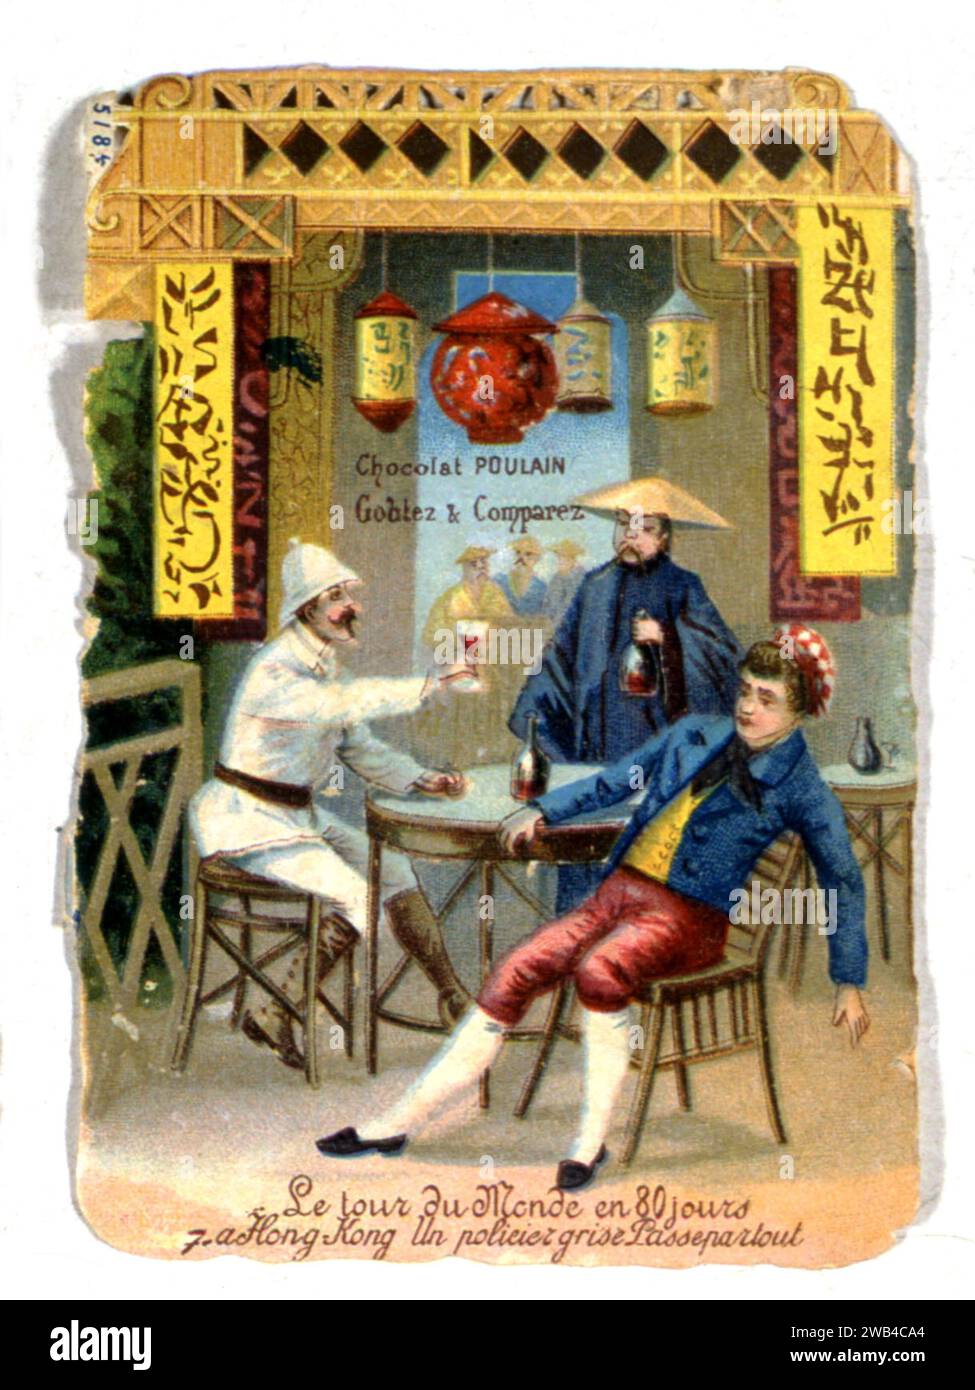 Jules Verne 'le tour du monde en 80 jours' (français : 'le tour du monde en 80 jours') Chromolithographie publicité chocolat Poulain 19e siècle Nantes, Musée Jules Verne Banque D'Images